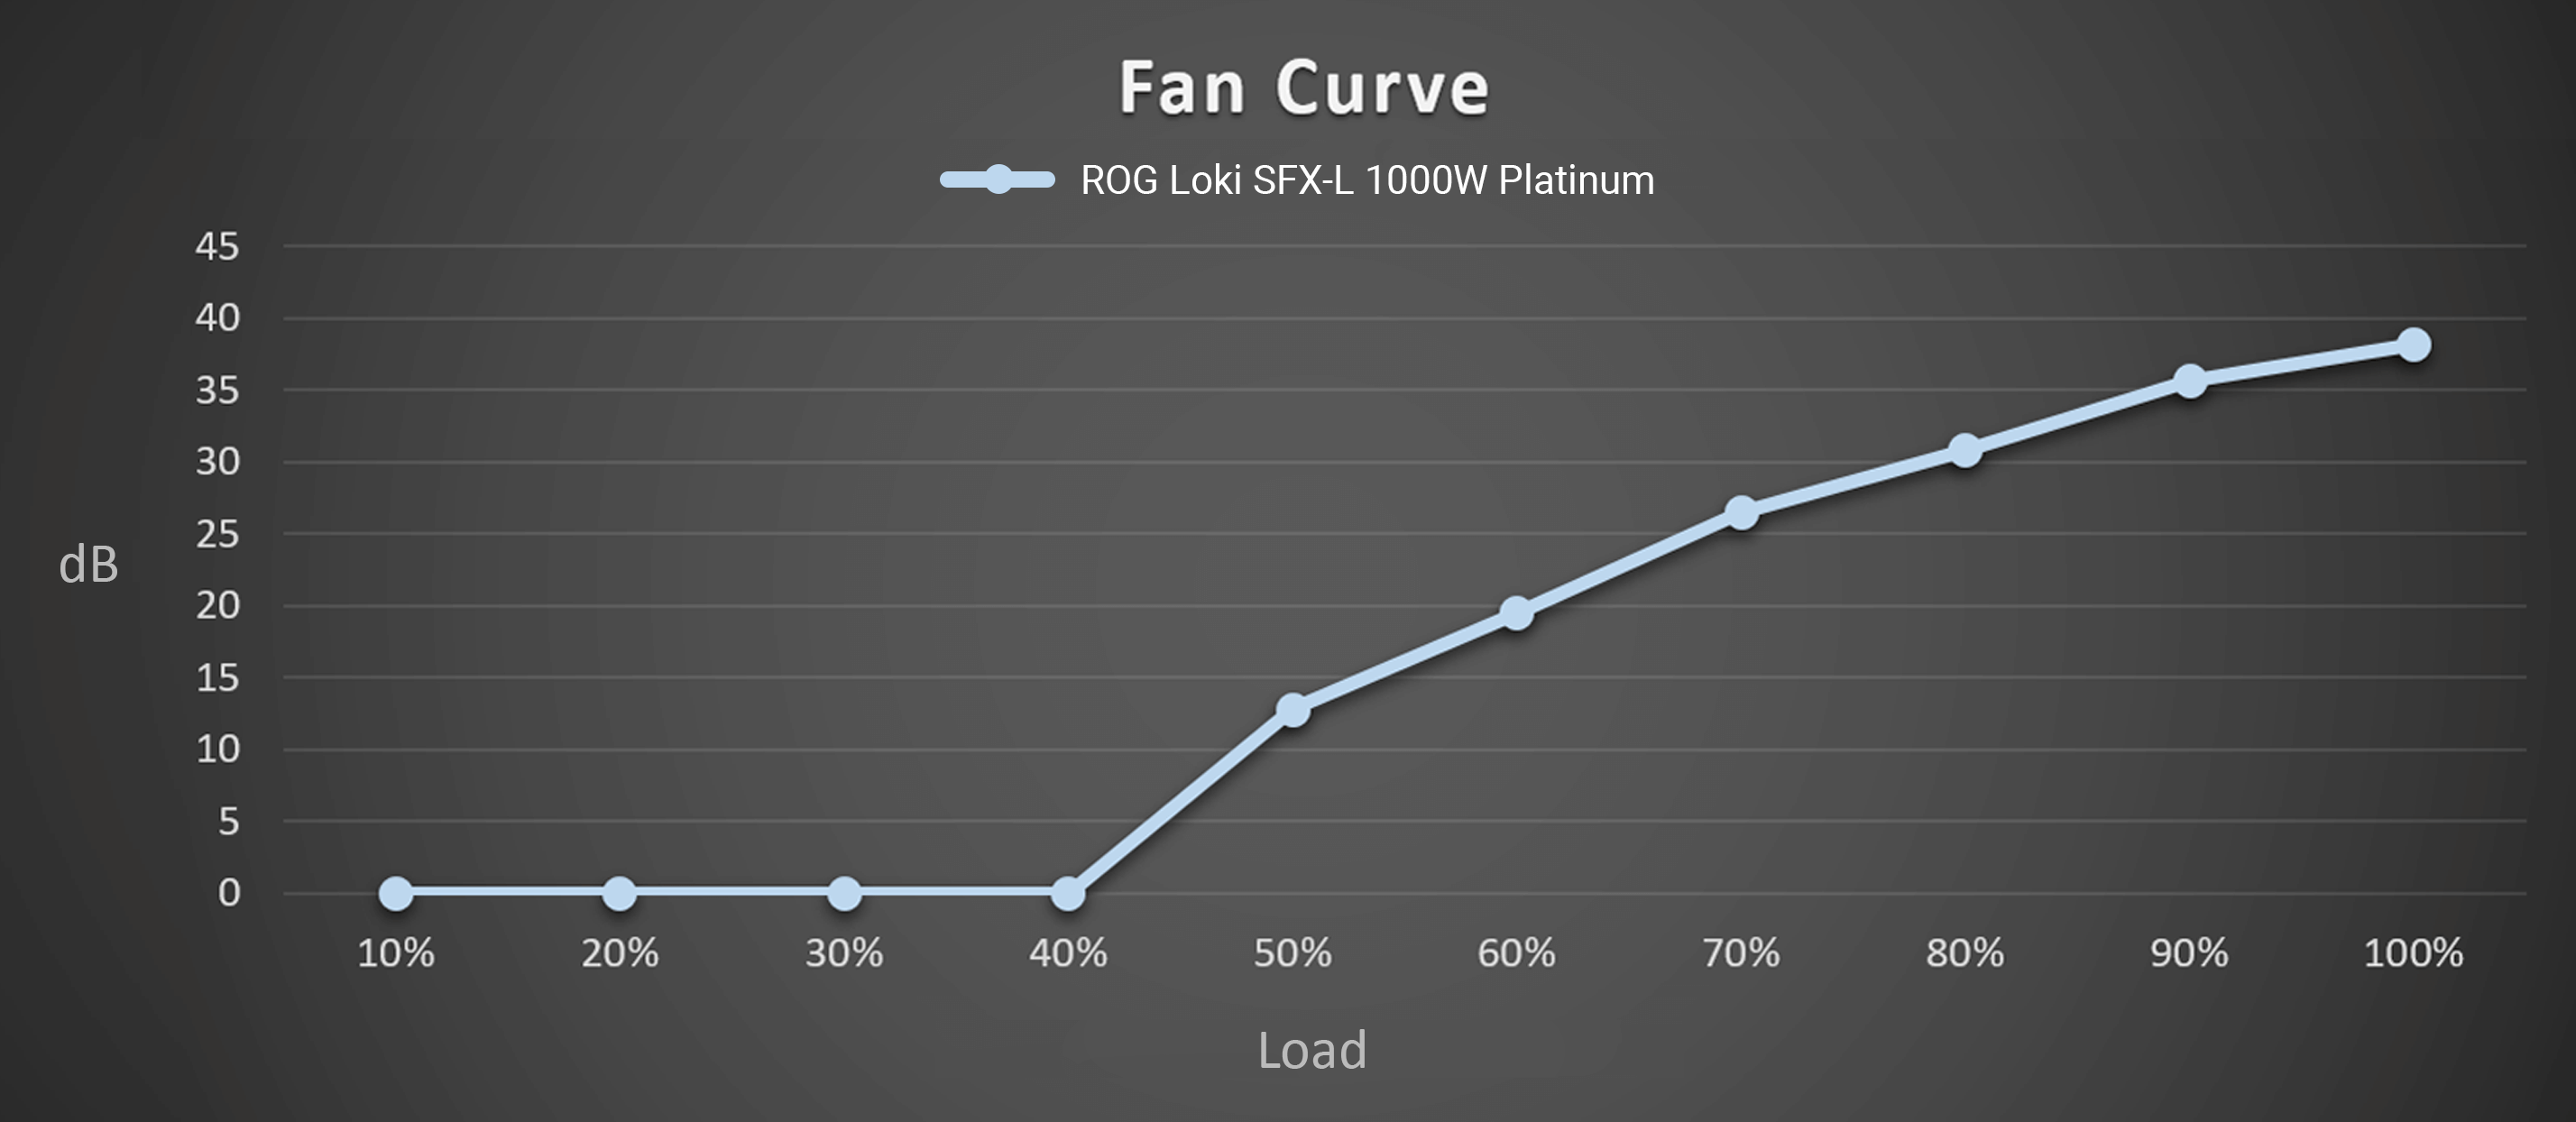 Fan noise curve of ROG Loki SFX-L 1000W Platinum